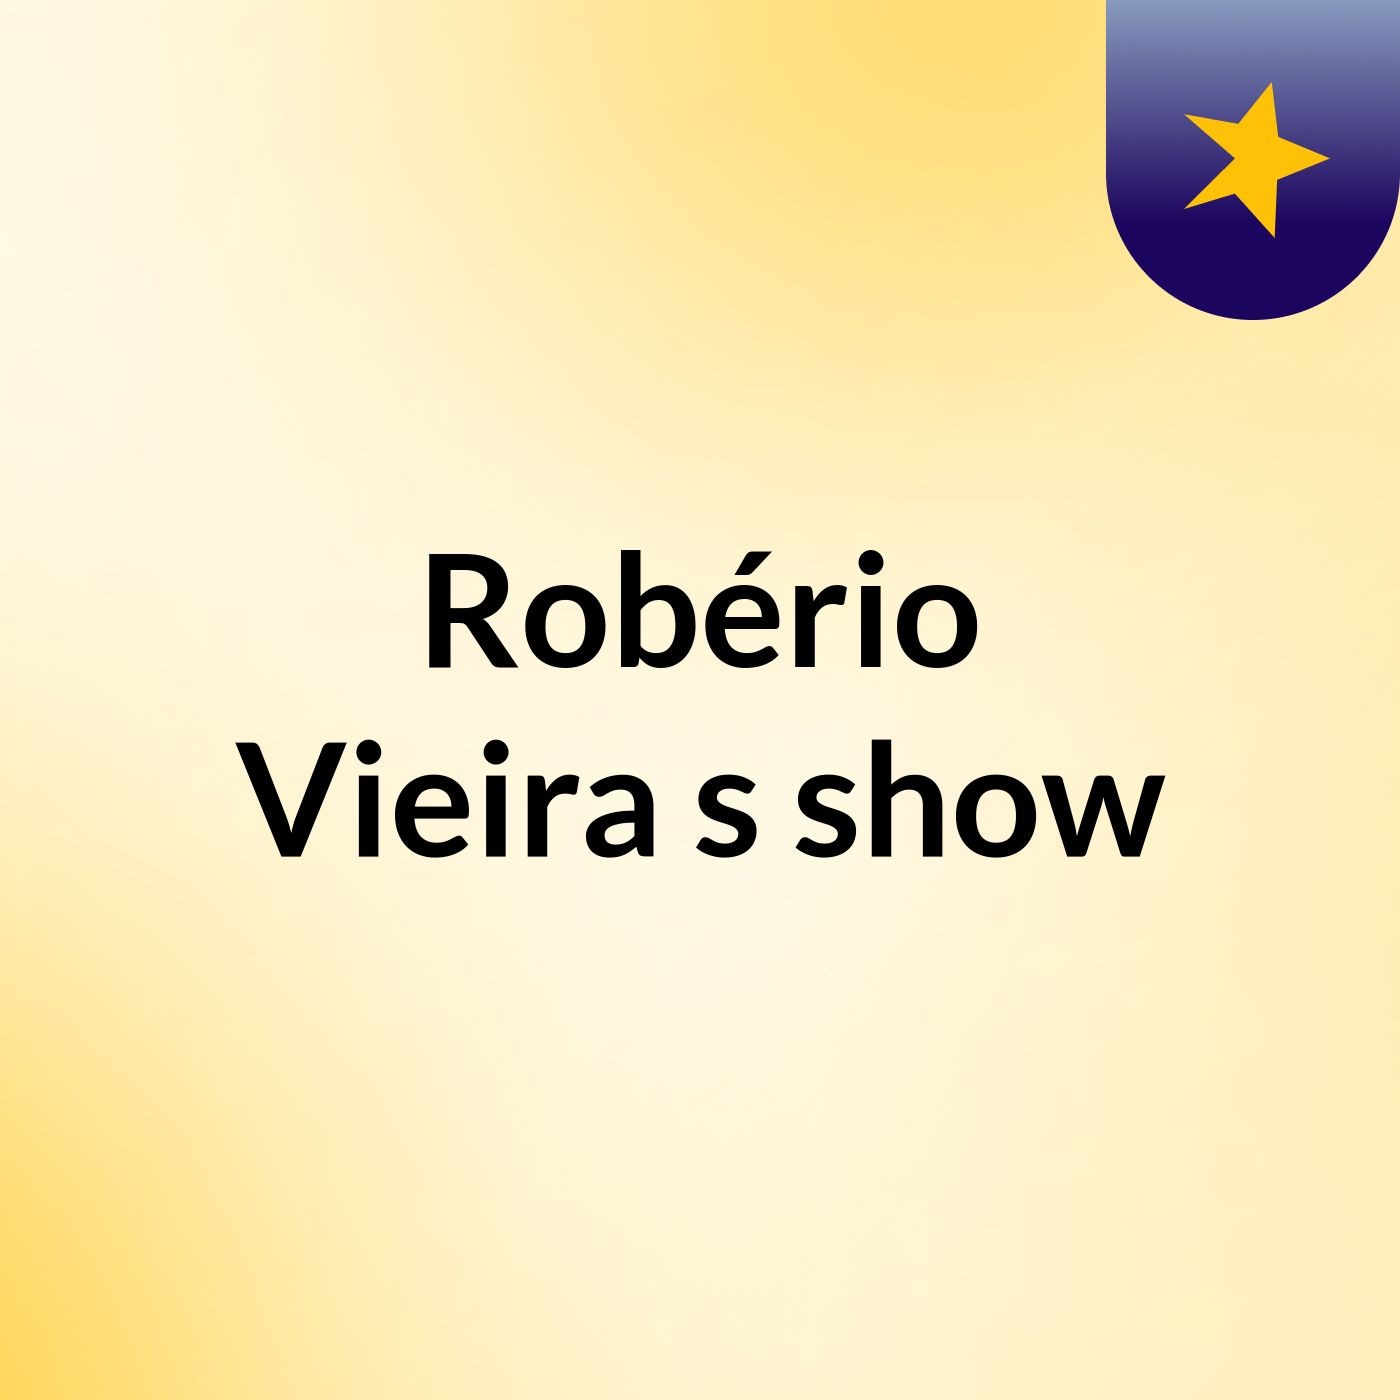 Robério Vieira's show